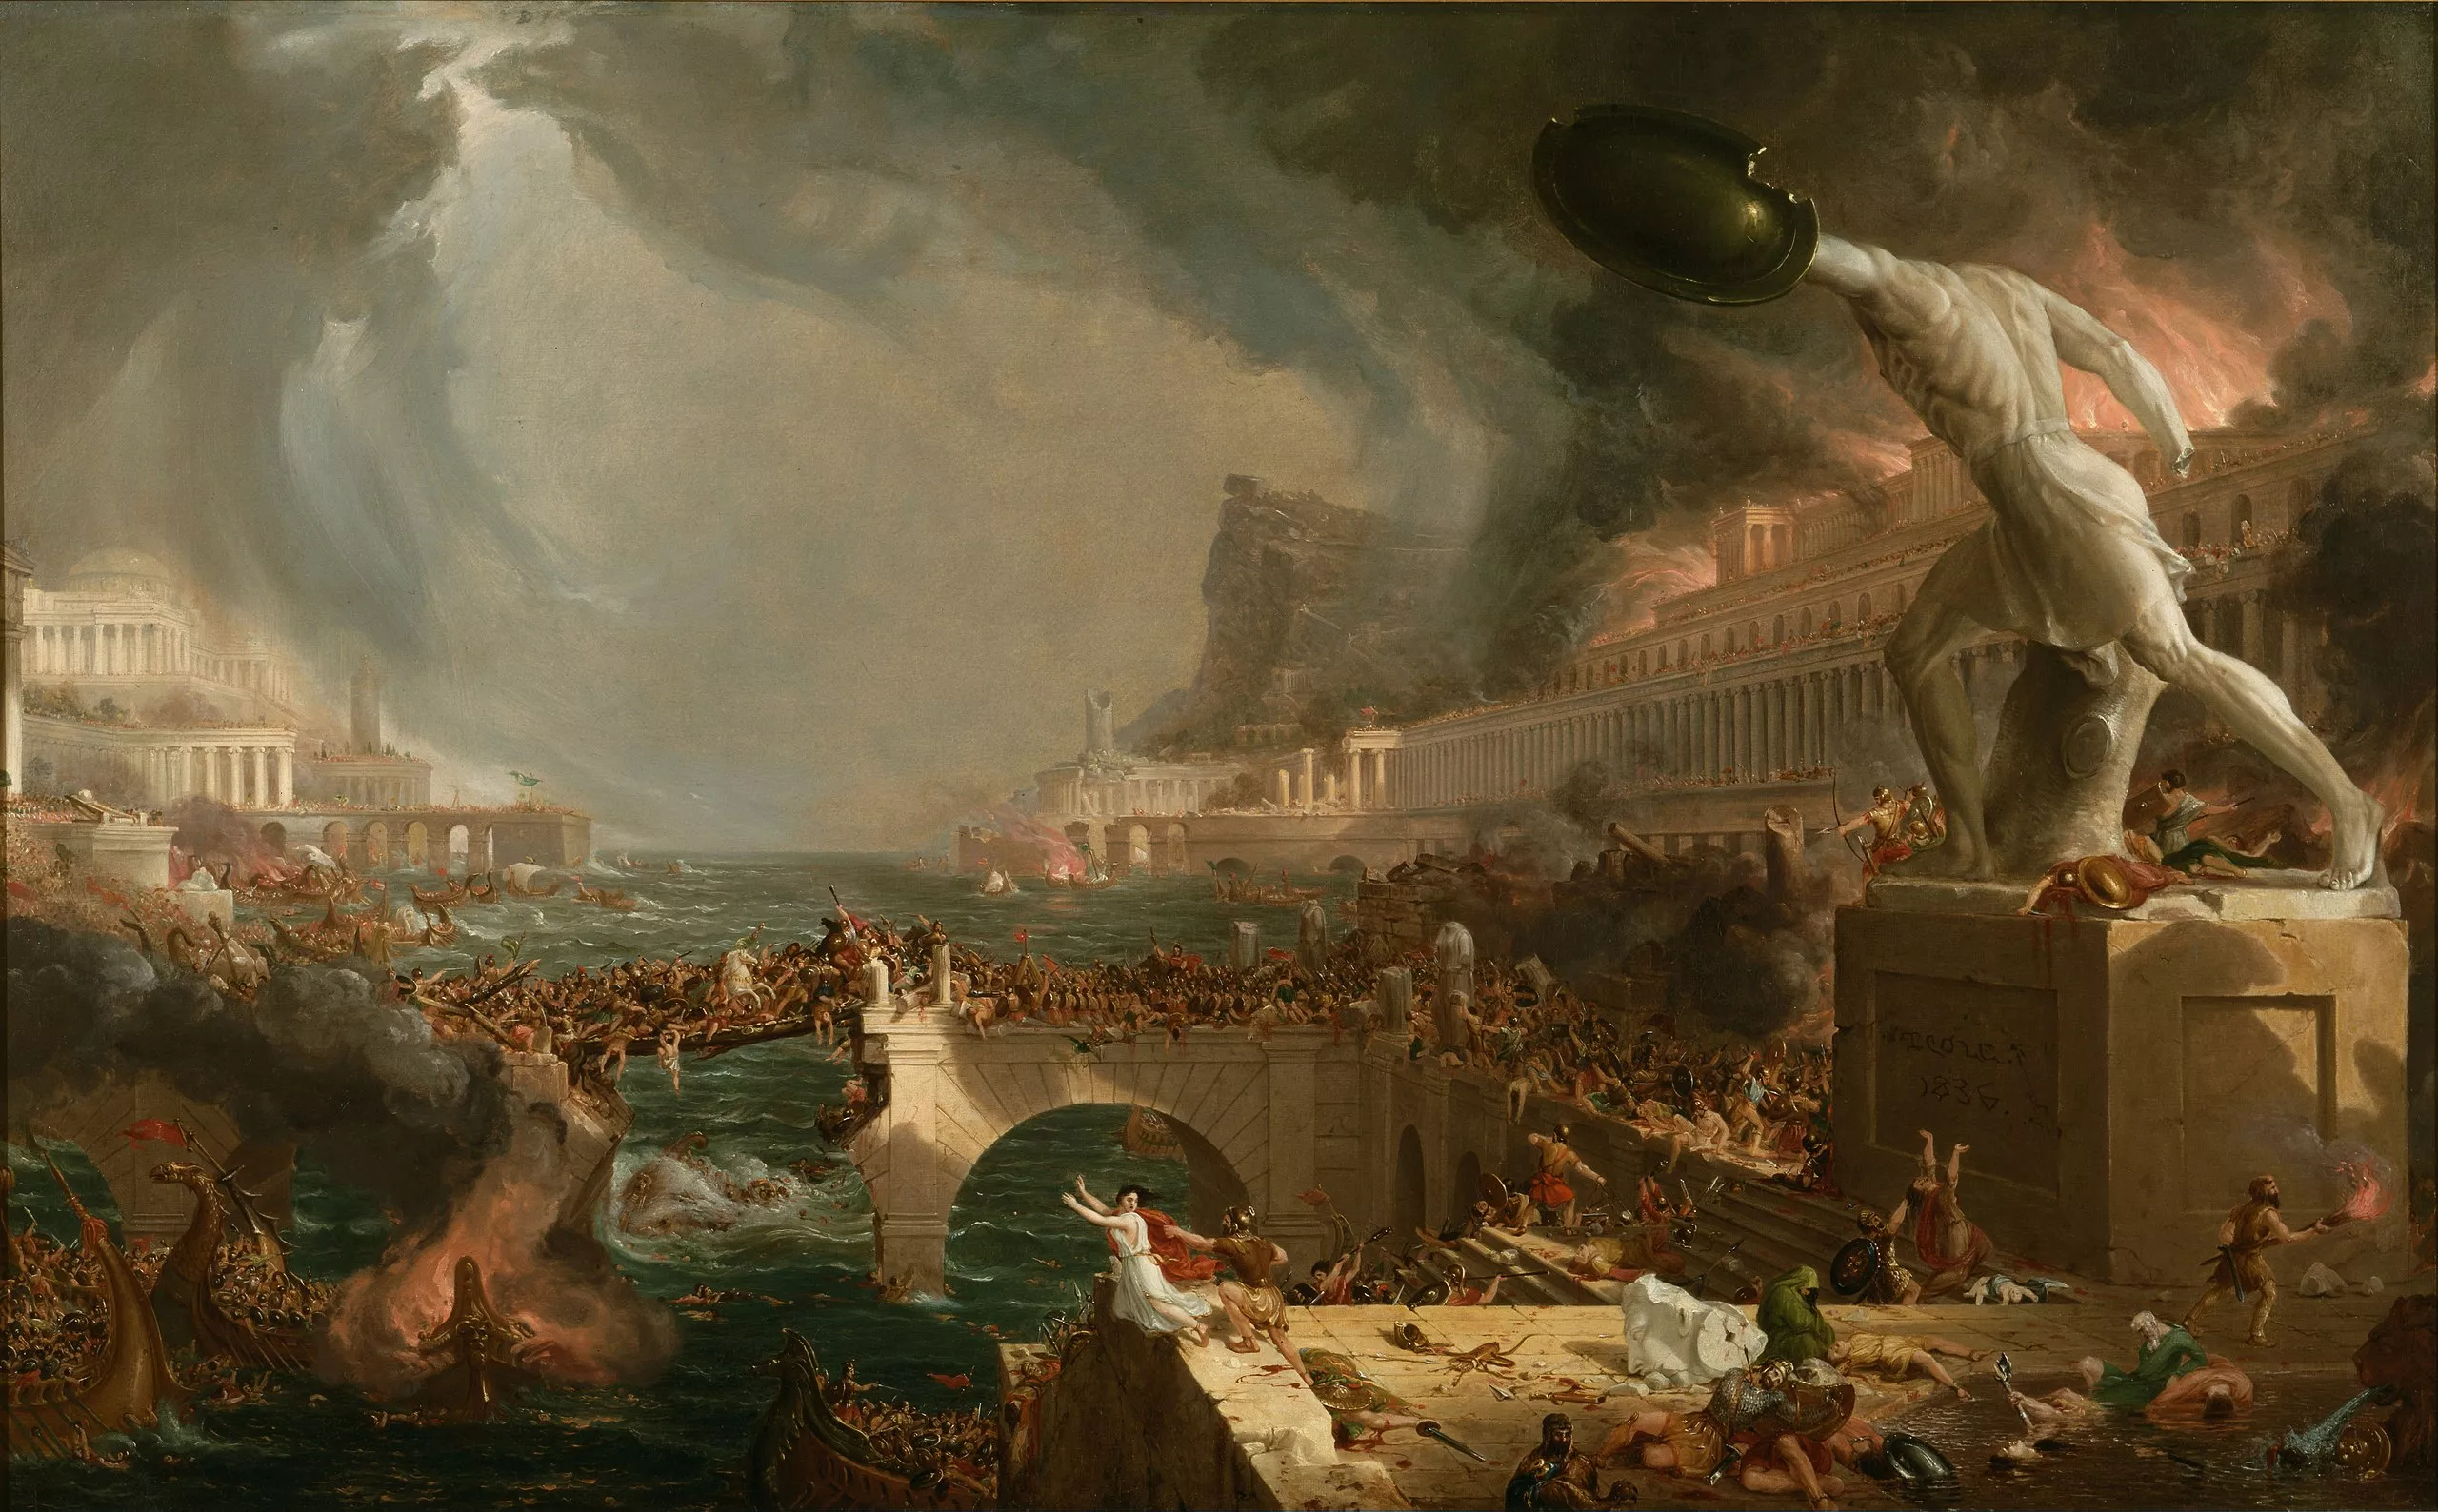 Thomas Cole, l’any 1836, va imaginar així el saqueig de Roma que van perpetrar Alaric i els visigots l’agost del 410